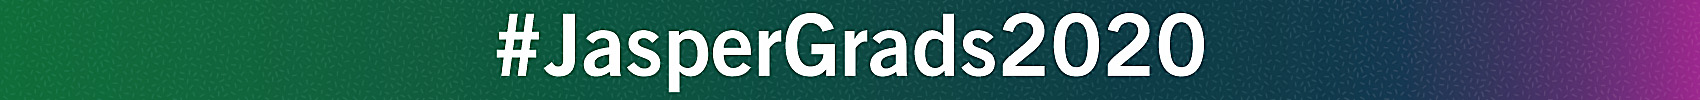 JasperGrads2020_Web-Banner-1700x100_FINAL.jpg